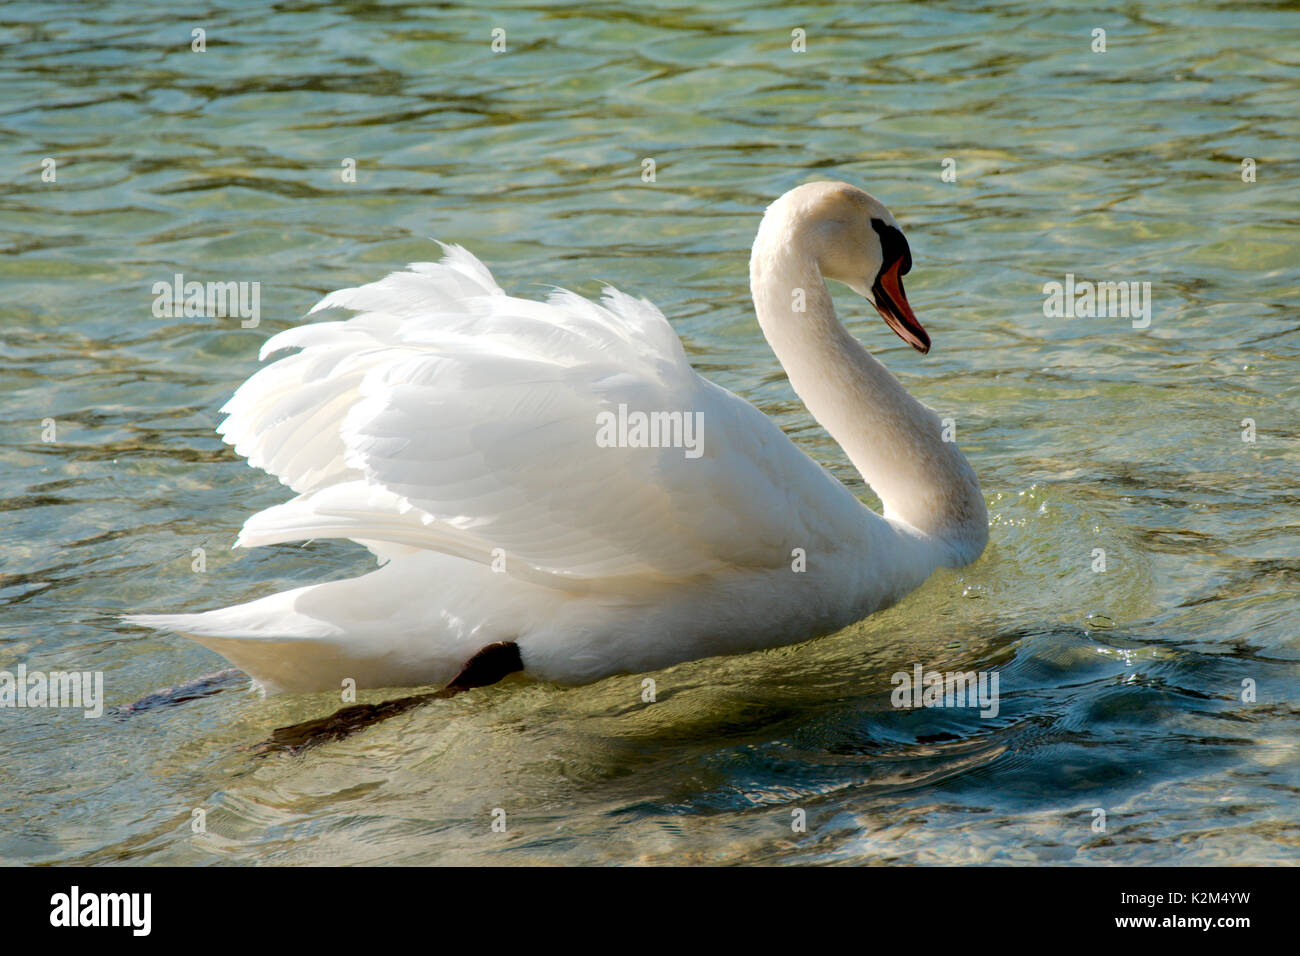 Single swan swimming in a lake Stock Photo